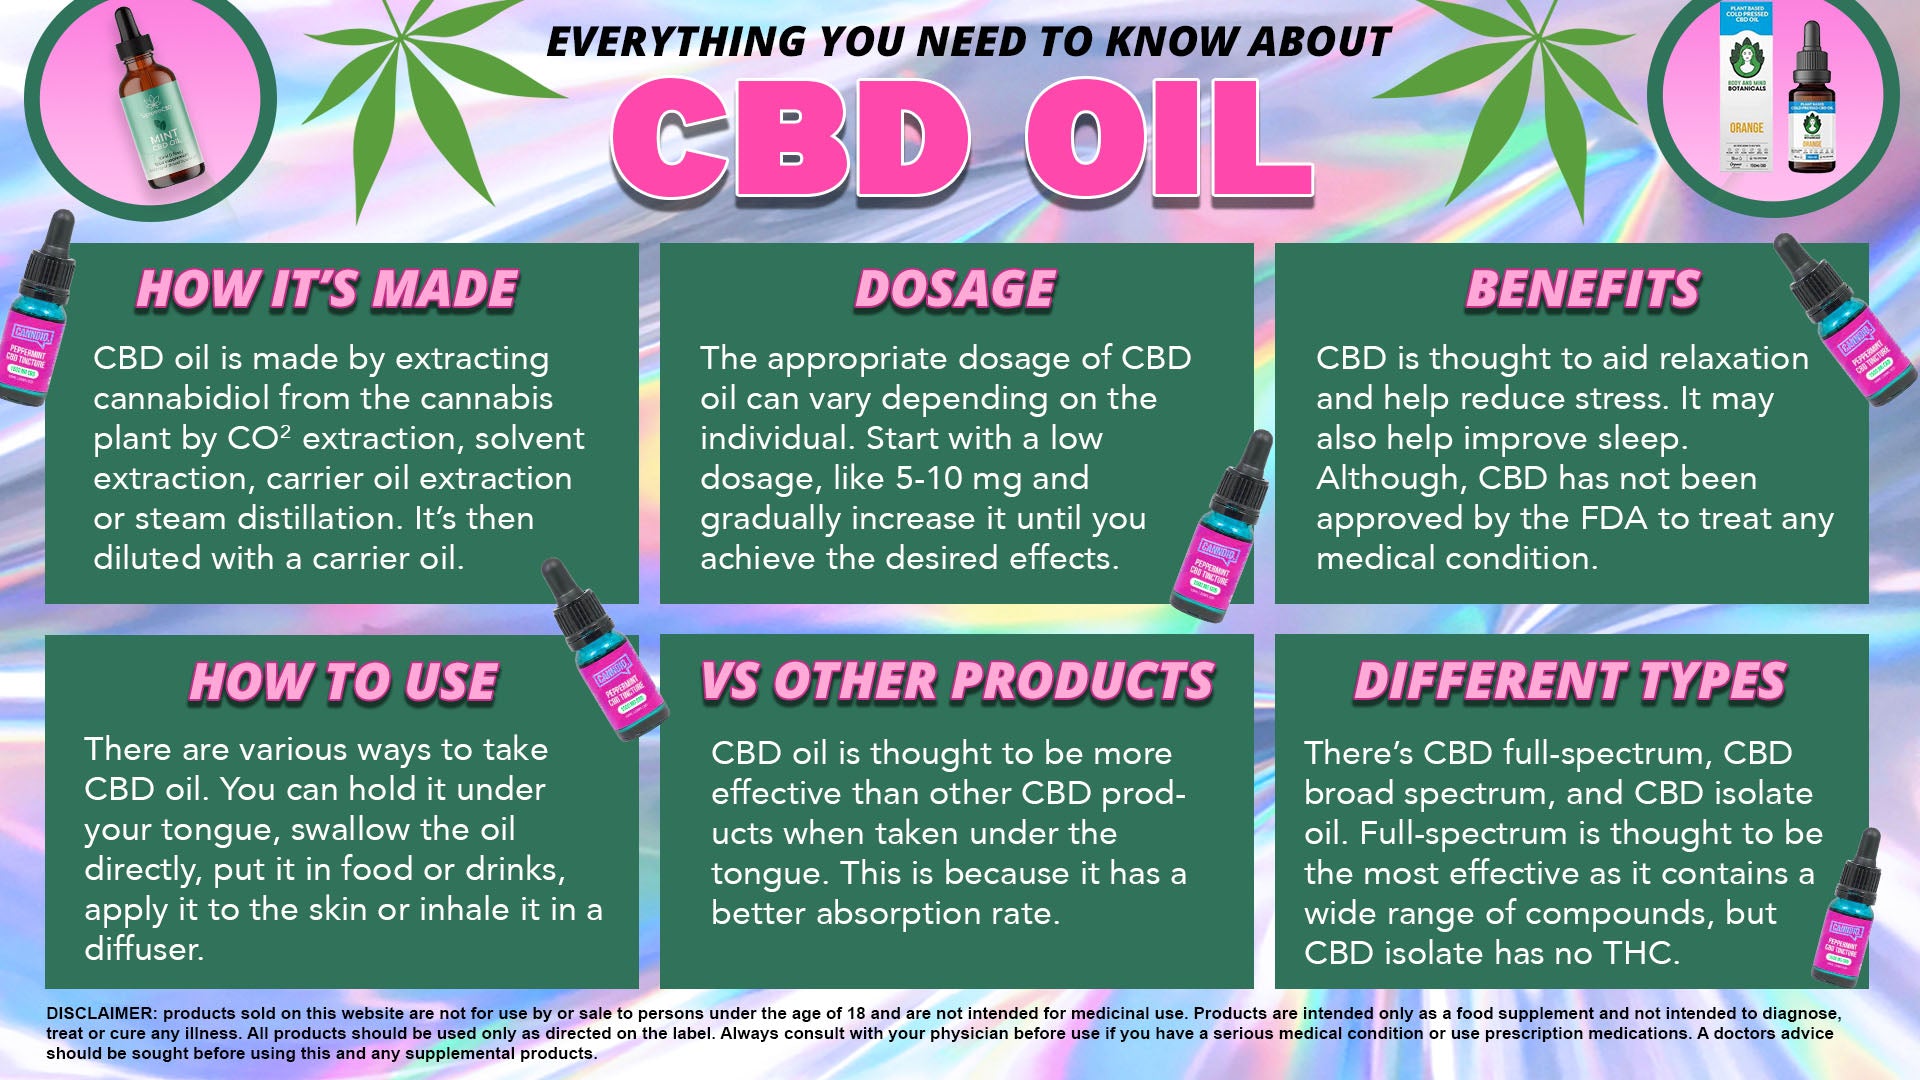 HOW DO YOU TAKE CBD OIL?